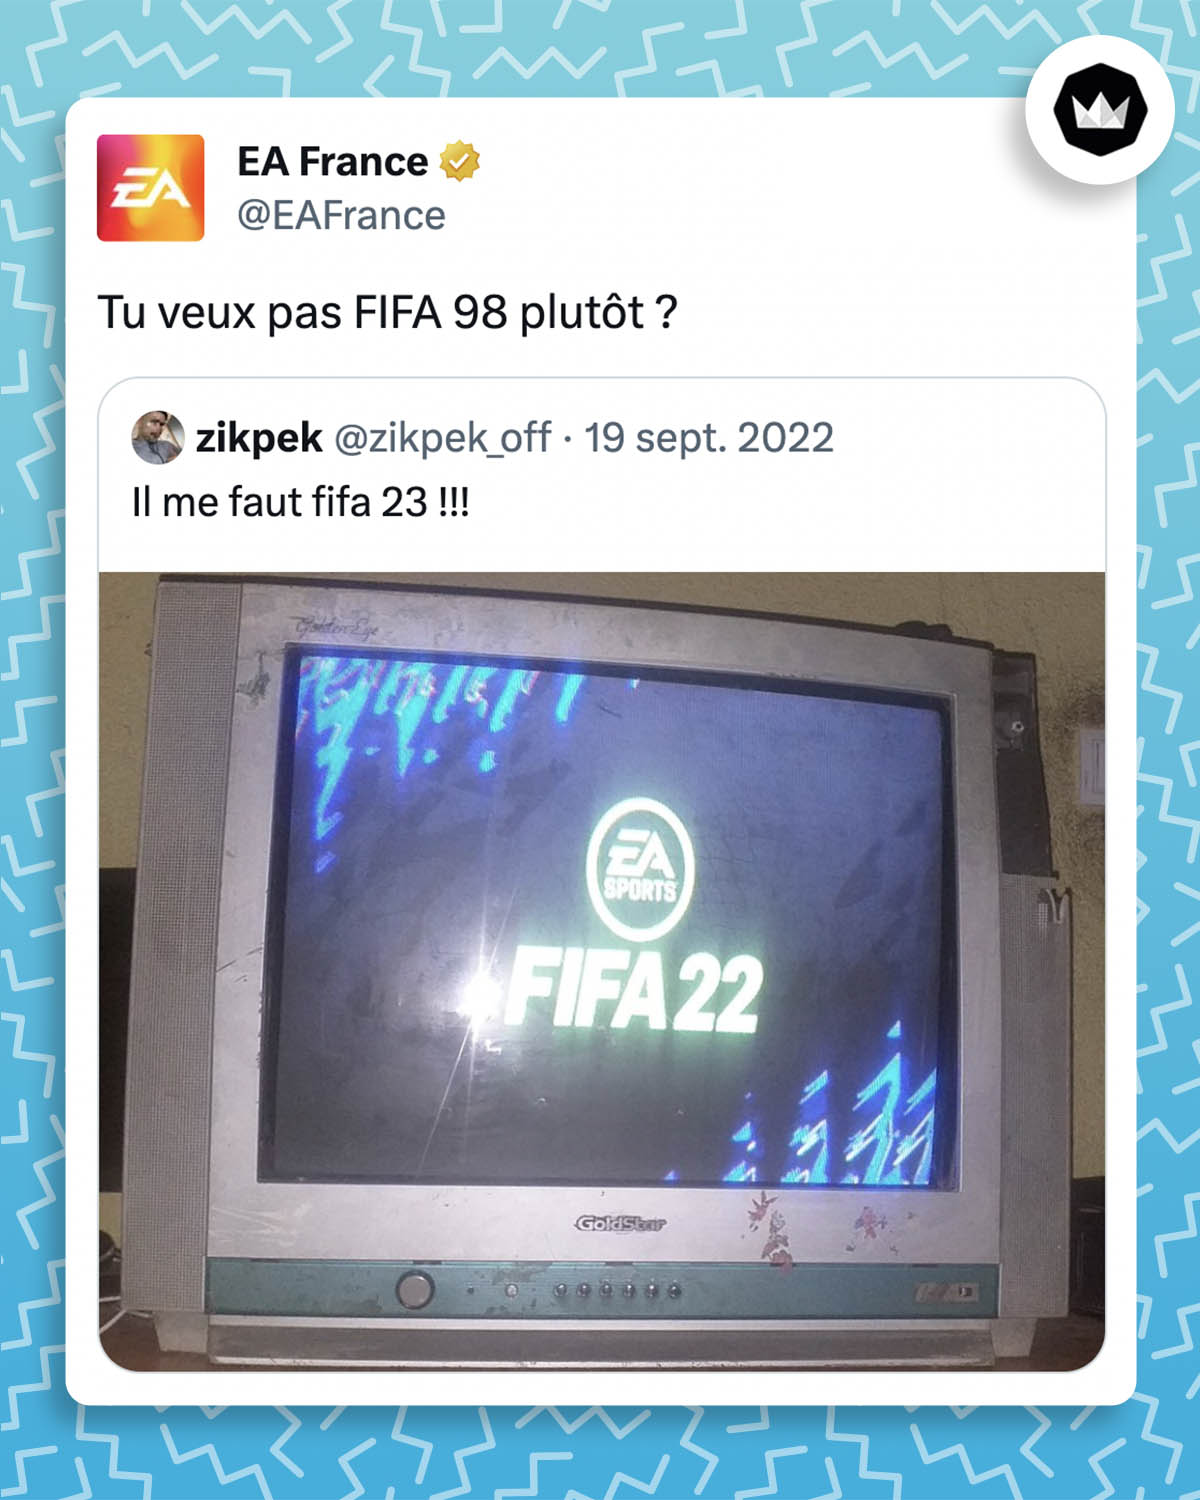 tweet de EA France : 

"Tu veux pas FIFA 98 plutôt ?"

Il répond à un internaute qui prend une photo du jeu FIFA 22 depuis un vieux téléviseur cathodique.